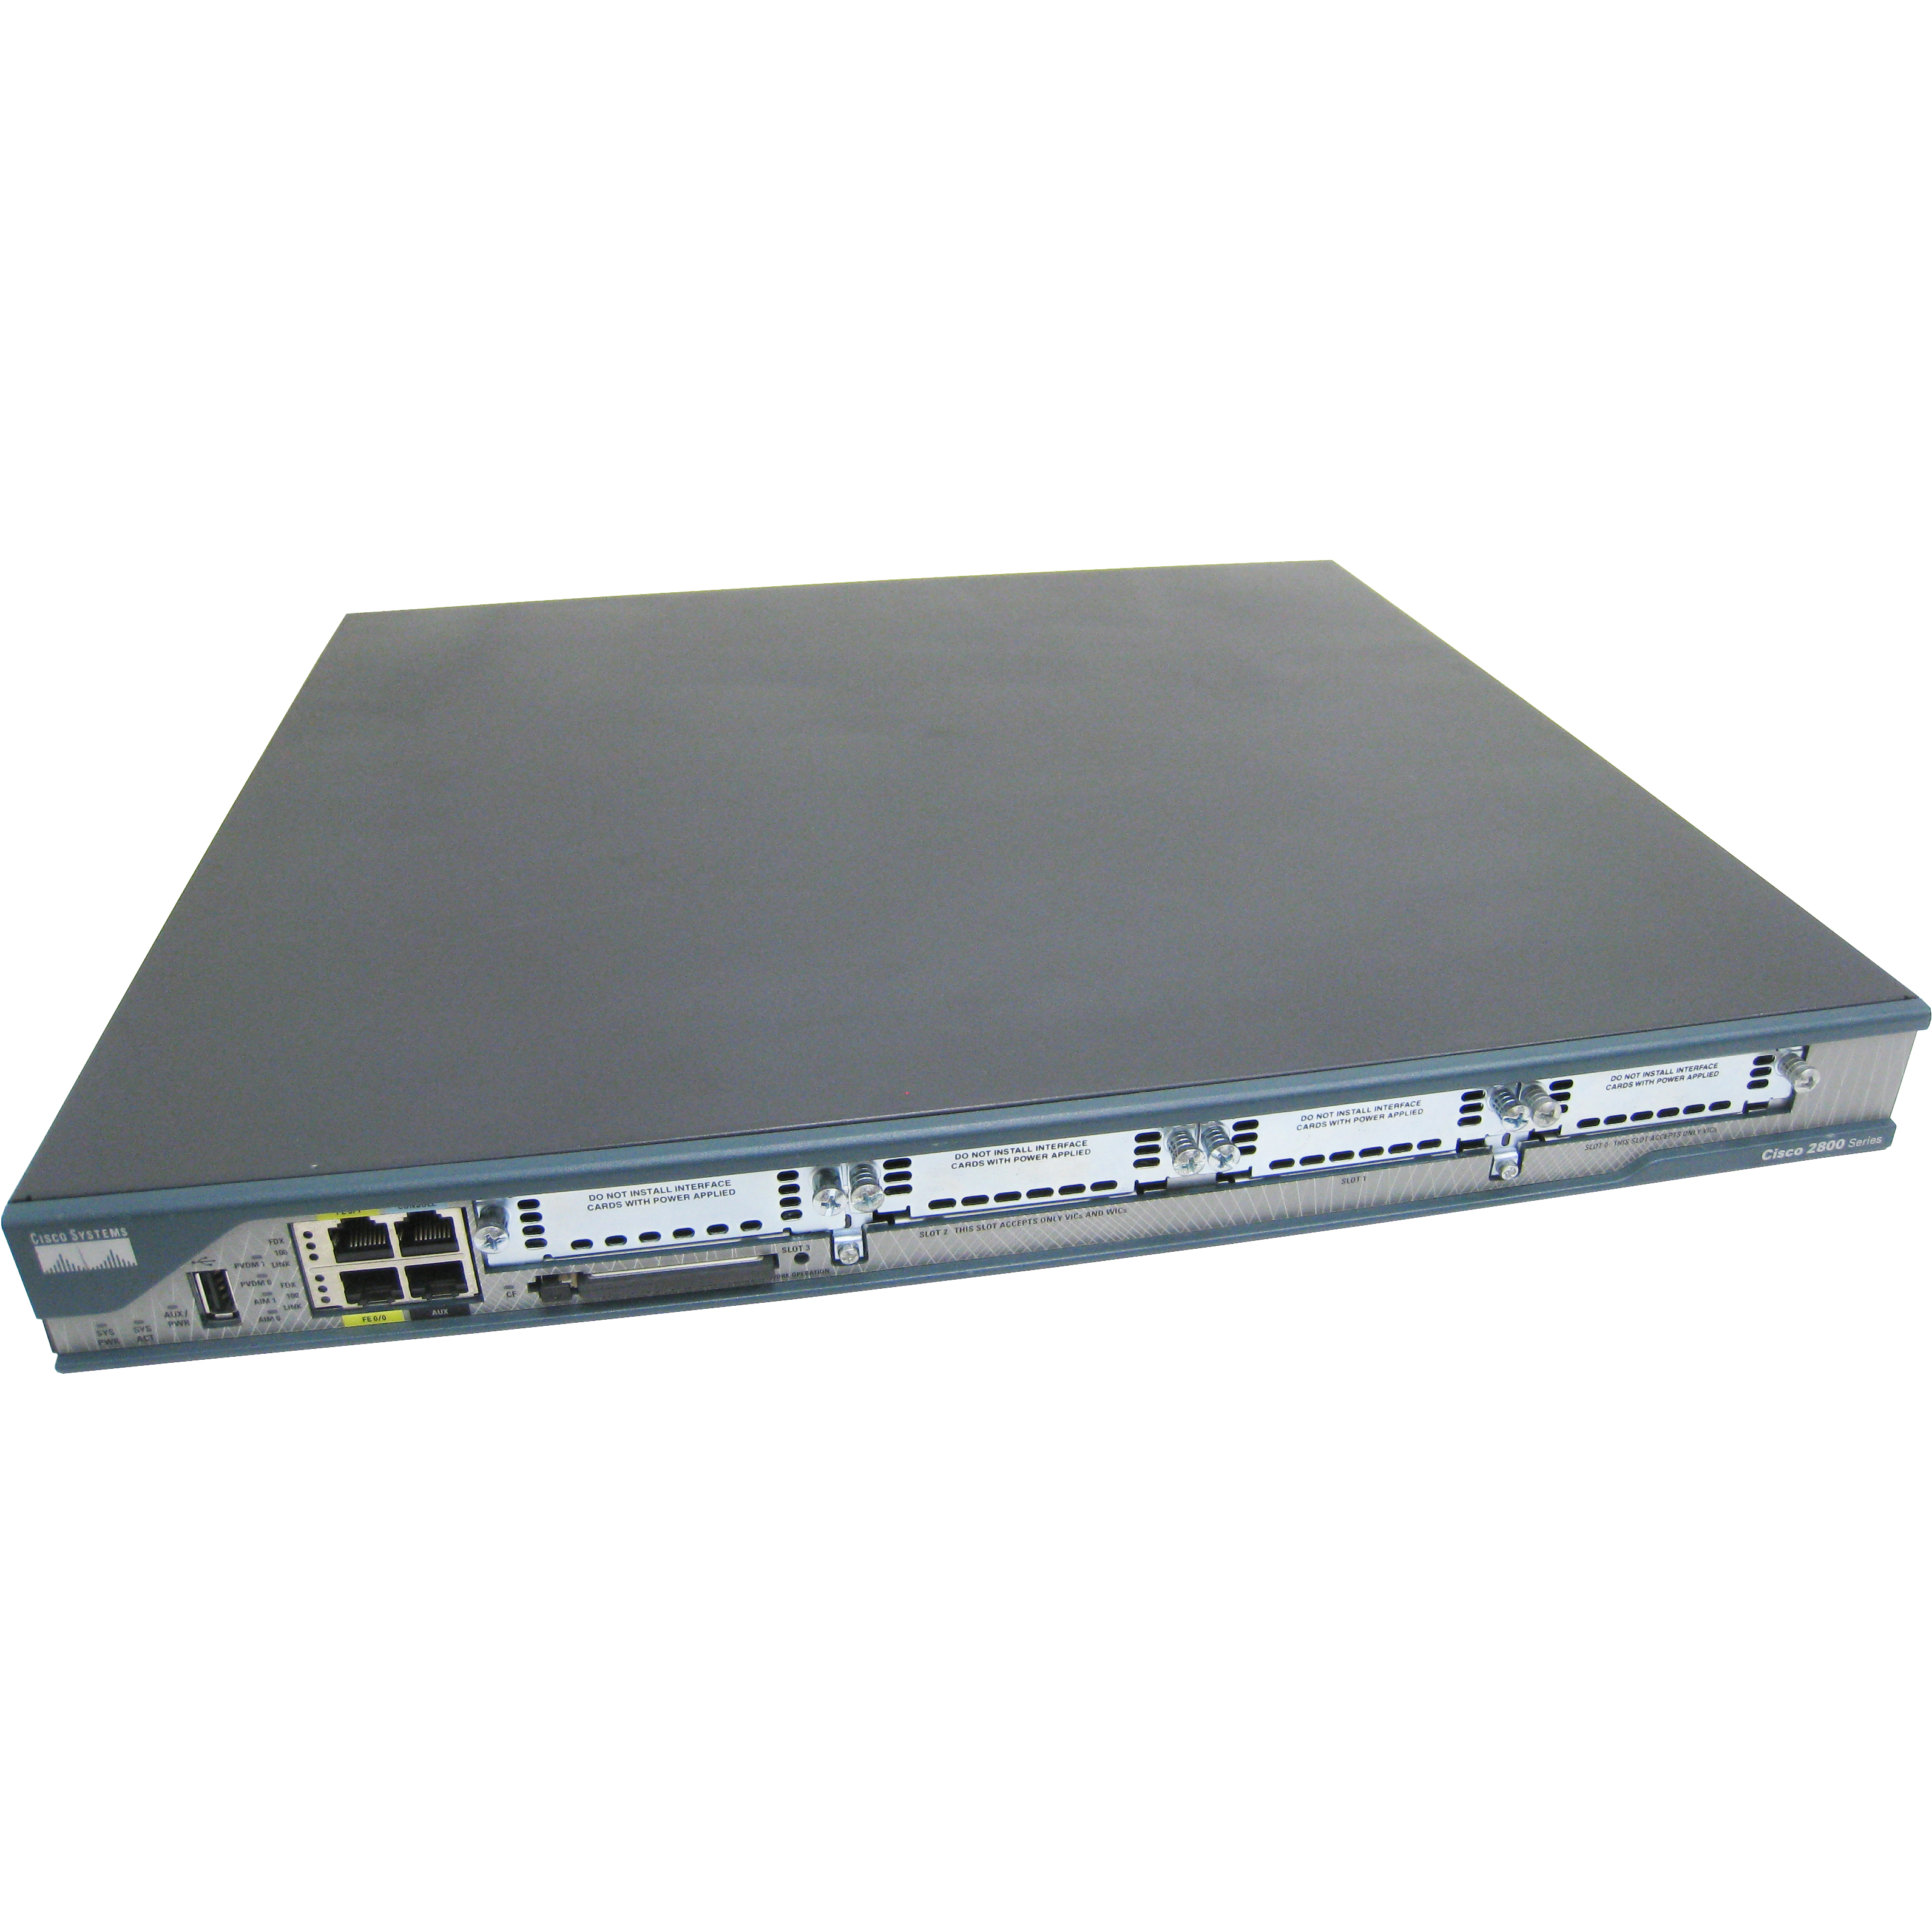 Cisco C2801-4SHDSL/K9